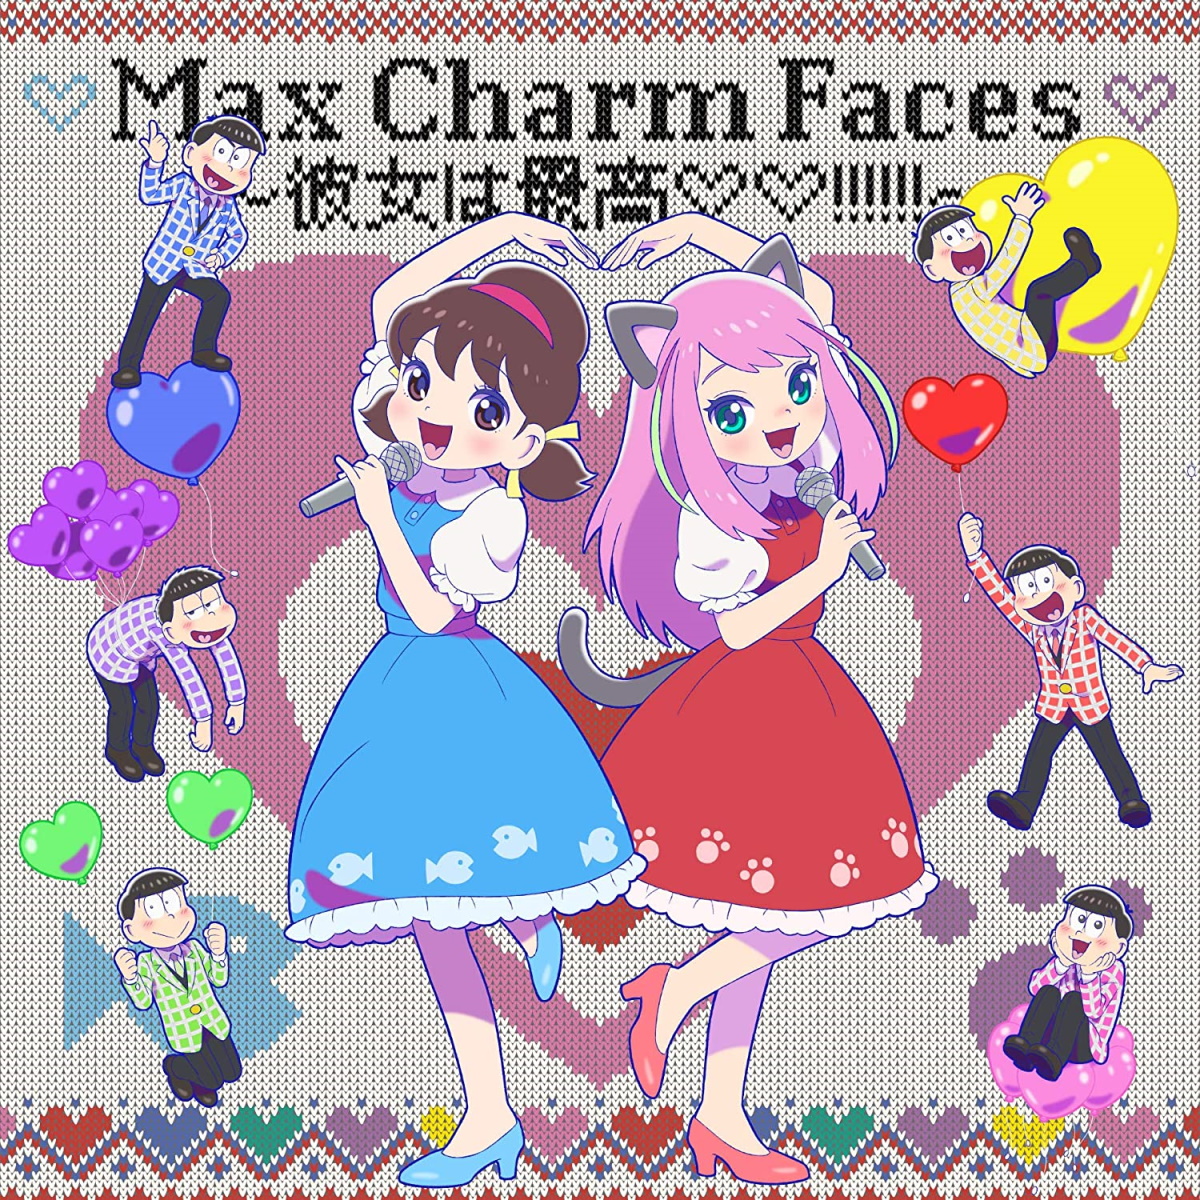 Cover art for『Shuta Sueyoshi with Totoko♡Nya & Matsuno-ke 6 Kyoudai - Max Charm Faces: Kanojo wa Saikou♡♡!!!!!!』from the release『Max Charm Faces: Kanojo wa Saikou♡♡!!!!!!』